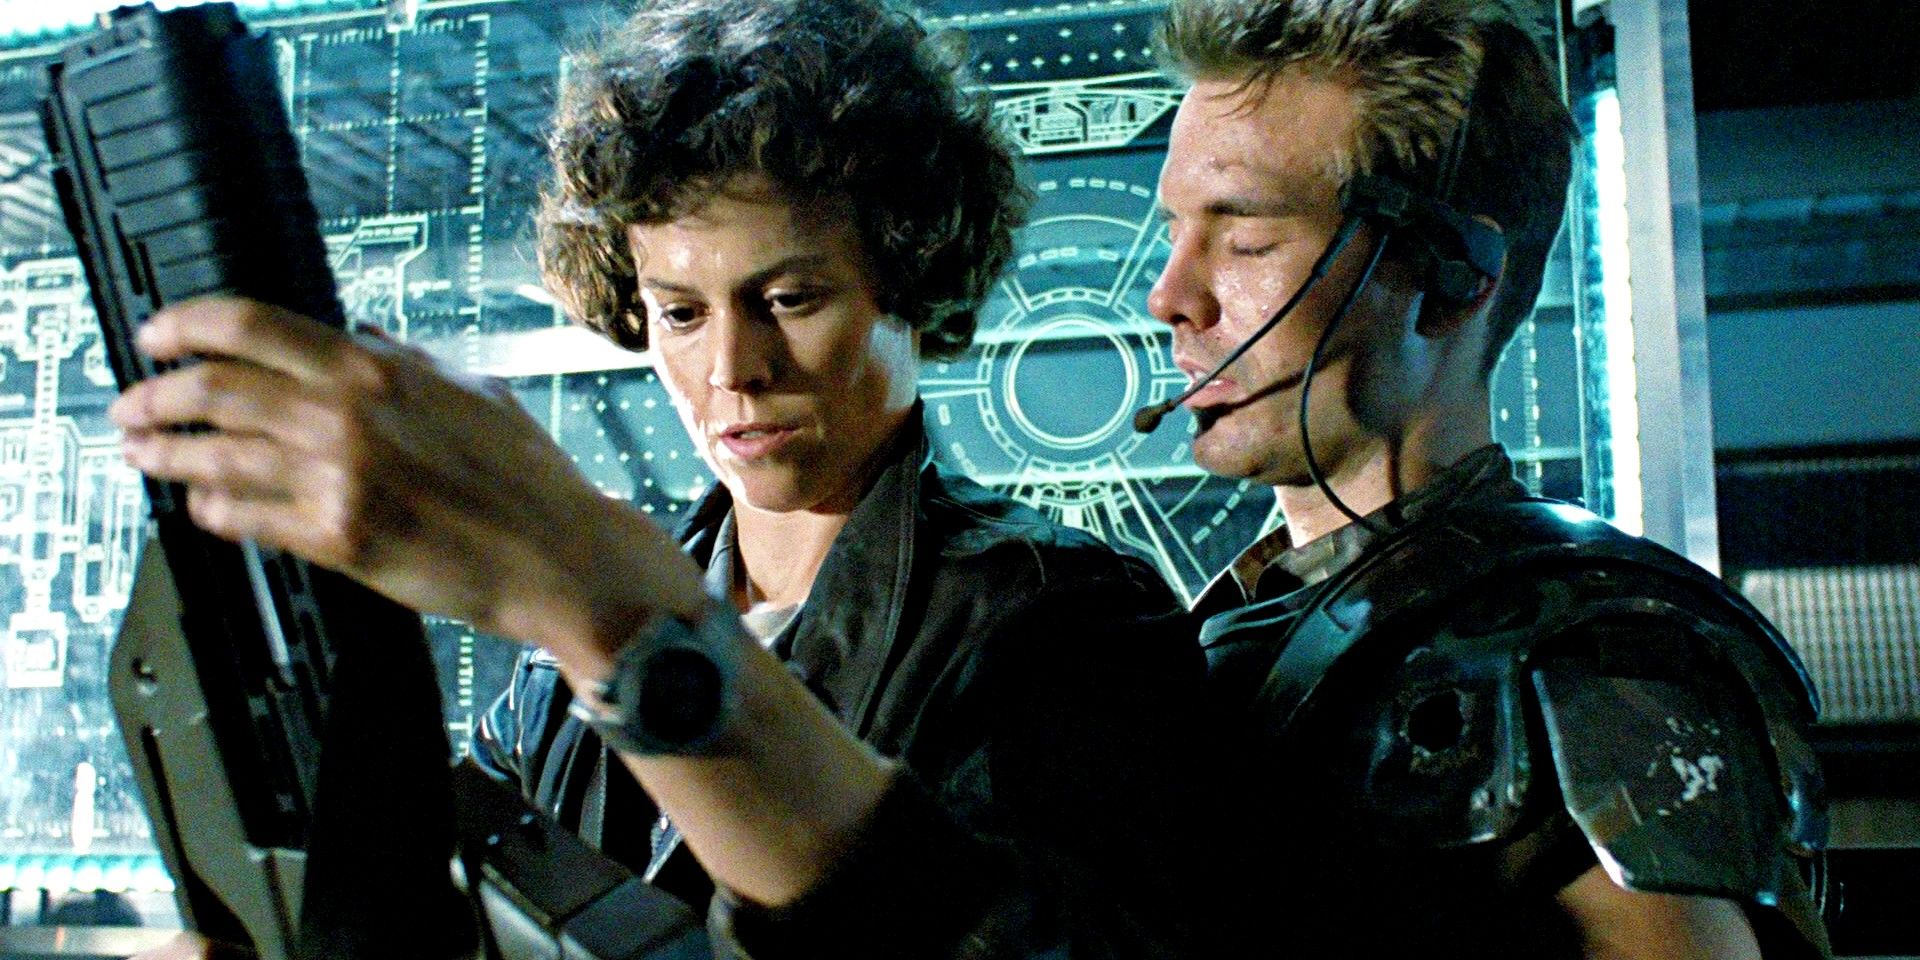 Ripley de Aliens está adornada con armas junto a huevos que abrazan la cara